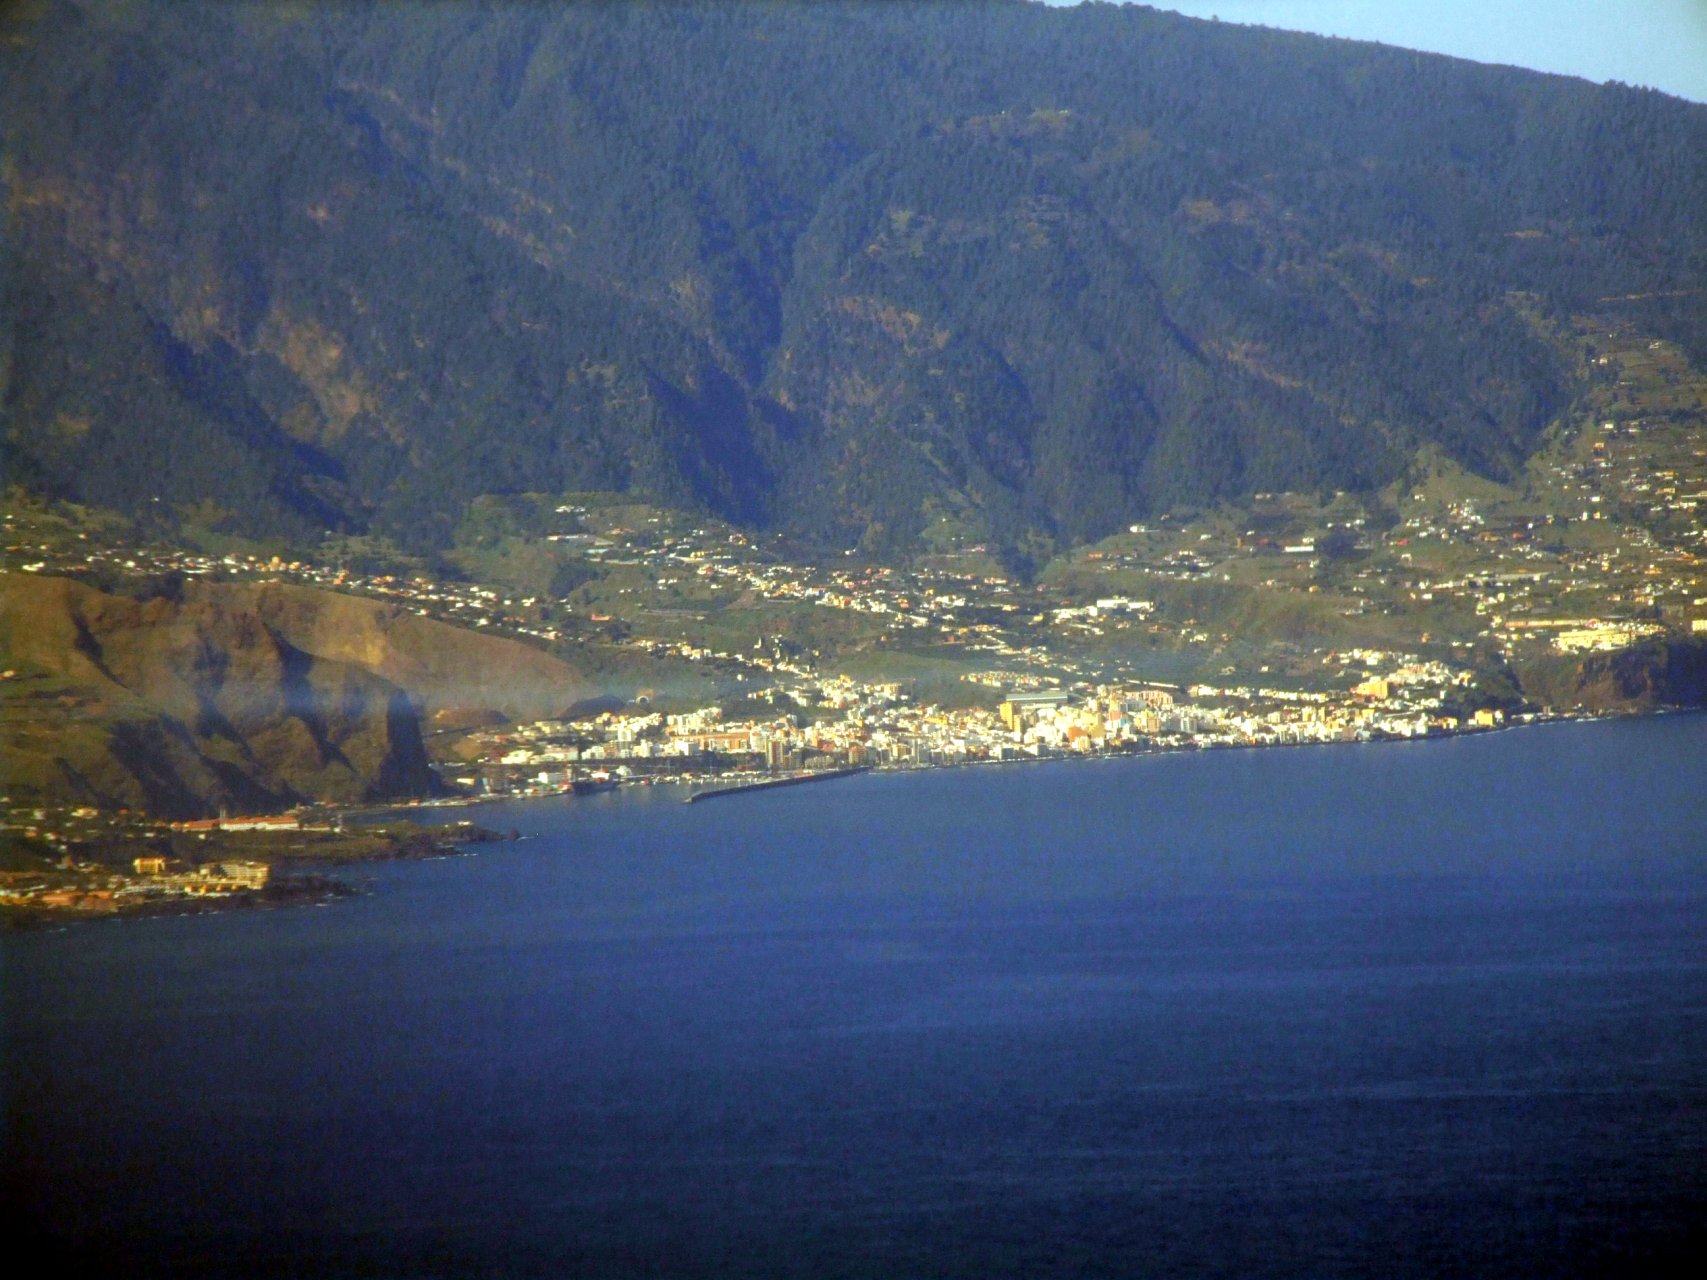 Santa Cruz widziane z samolotu